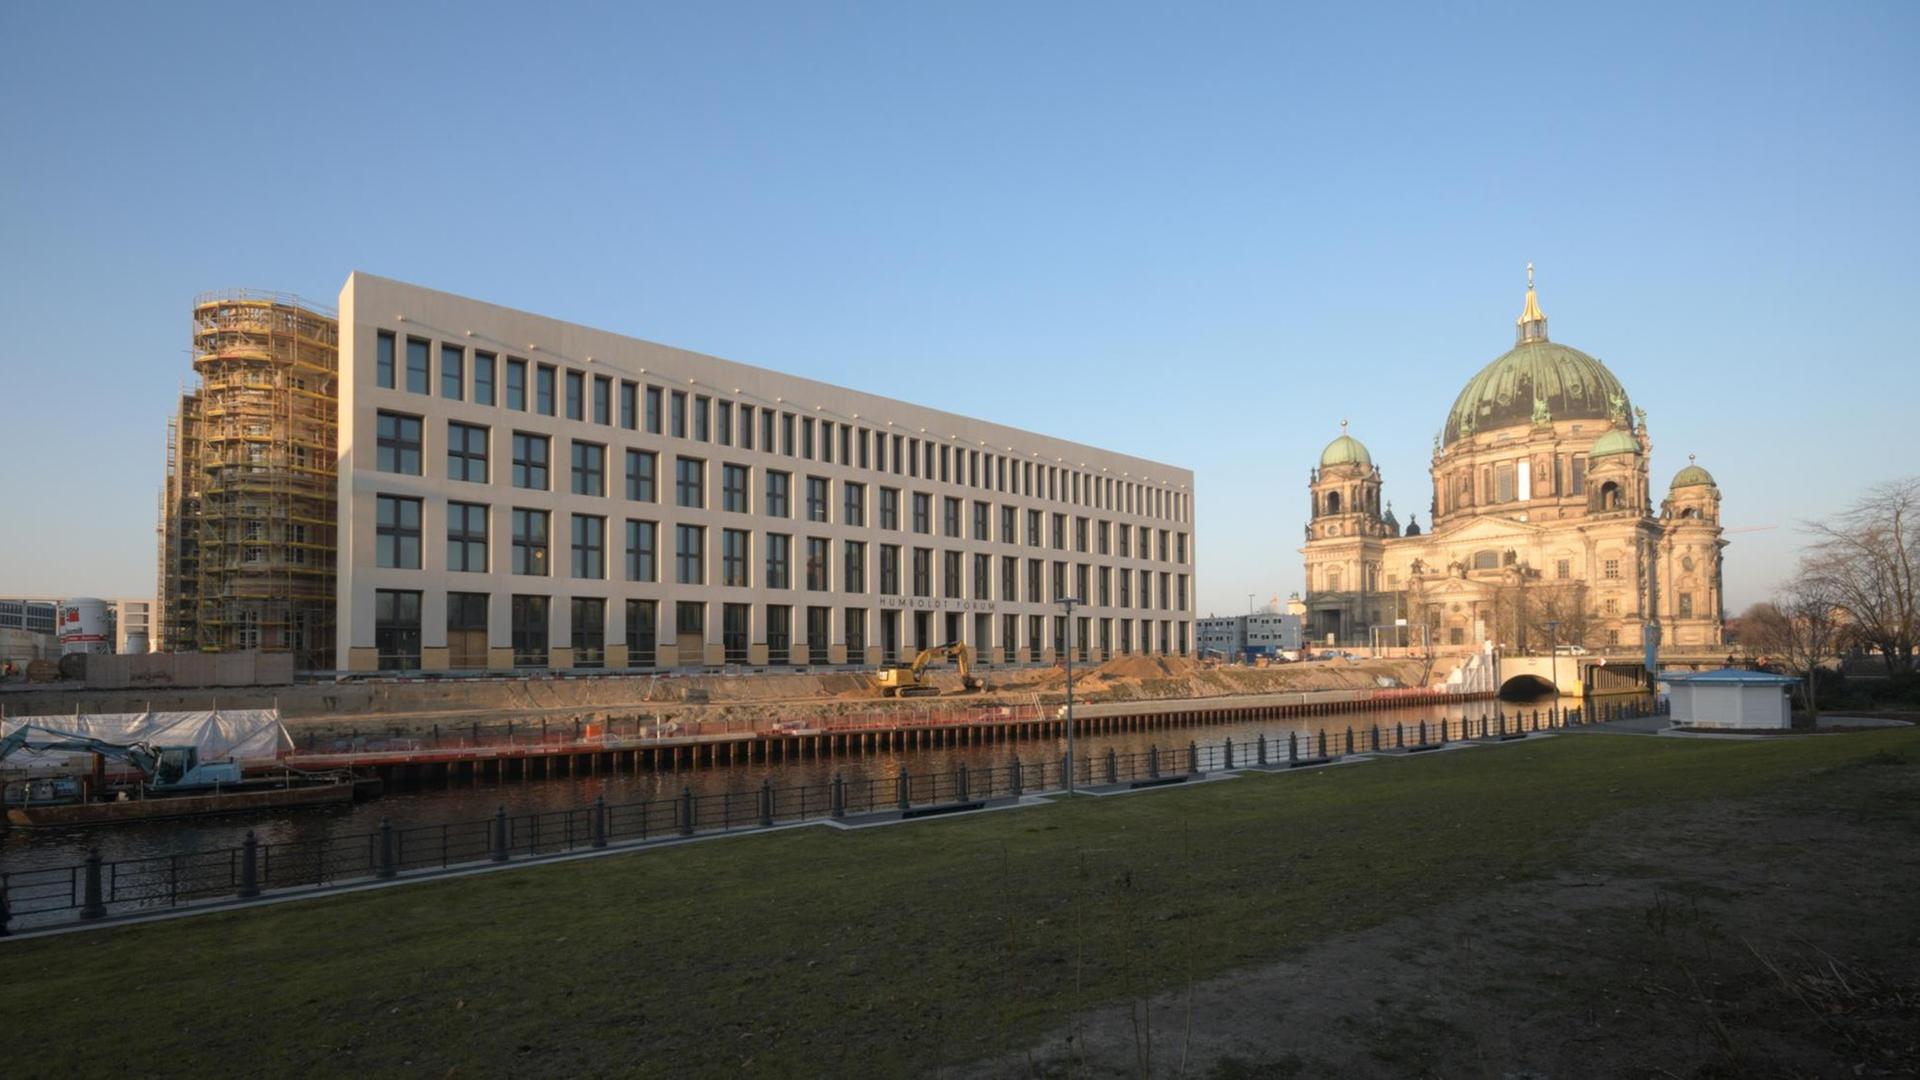 Das Humboldt Forum in Berlin, das ab 2019 schrittweise eröffnet werden soll, rechts im Hintergrund der Berliner Dom